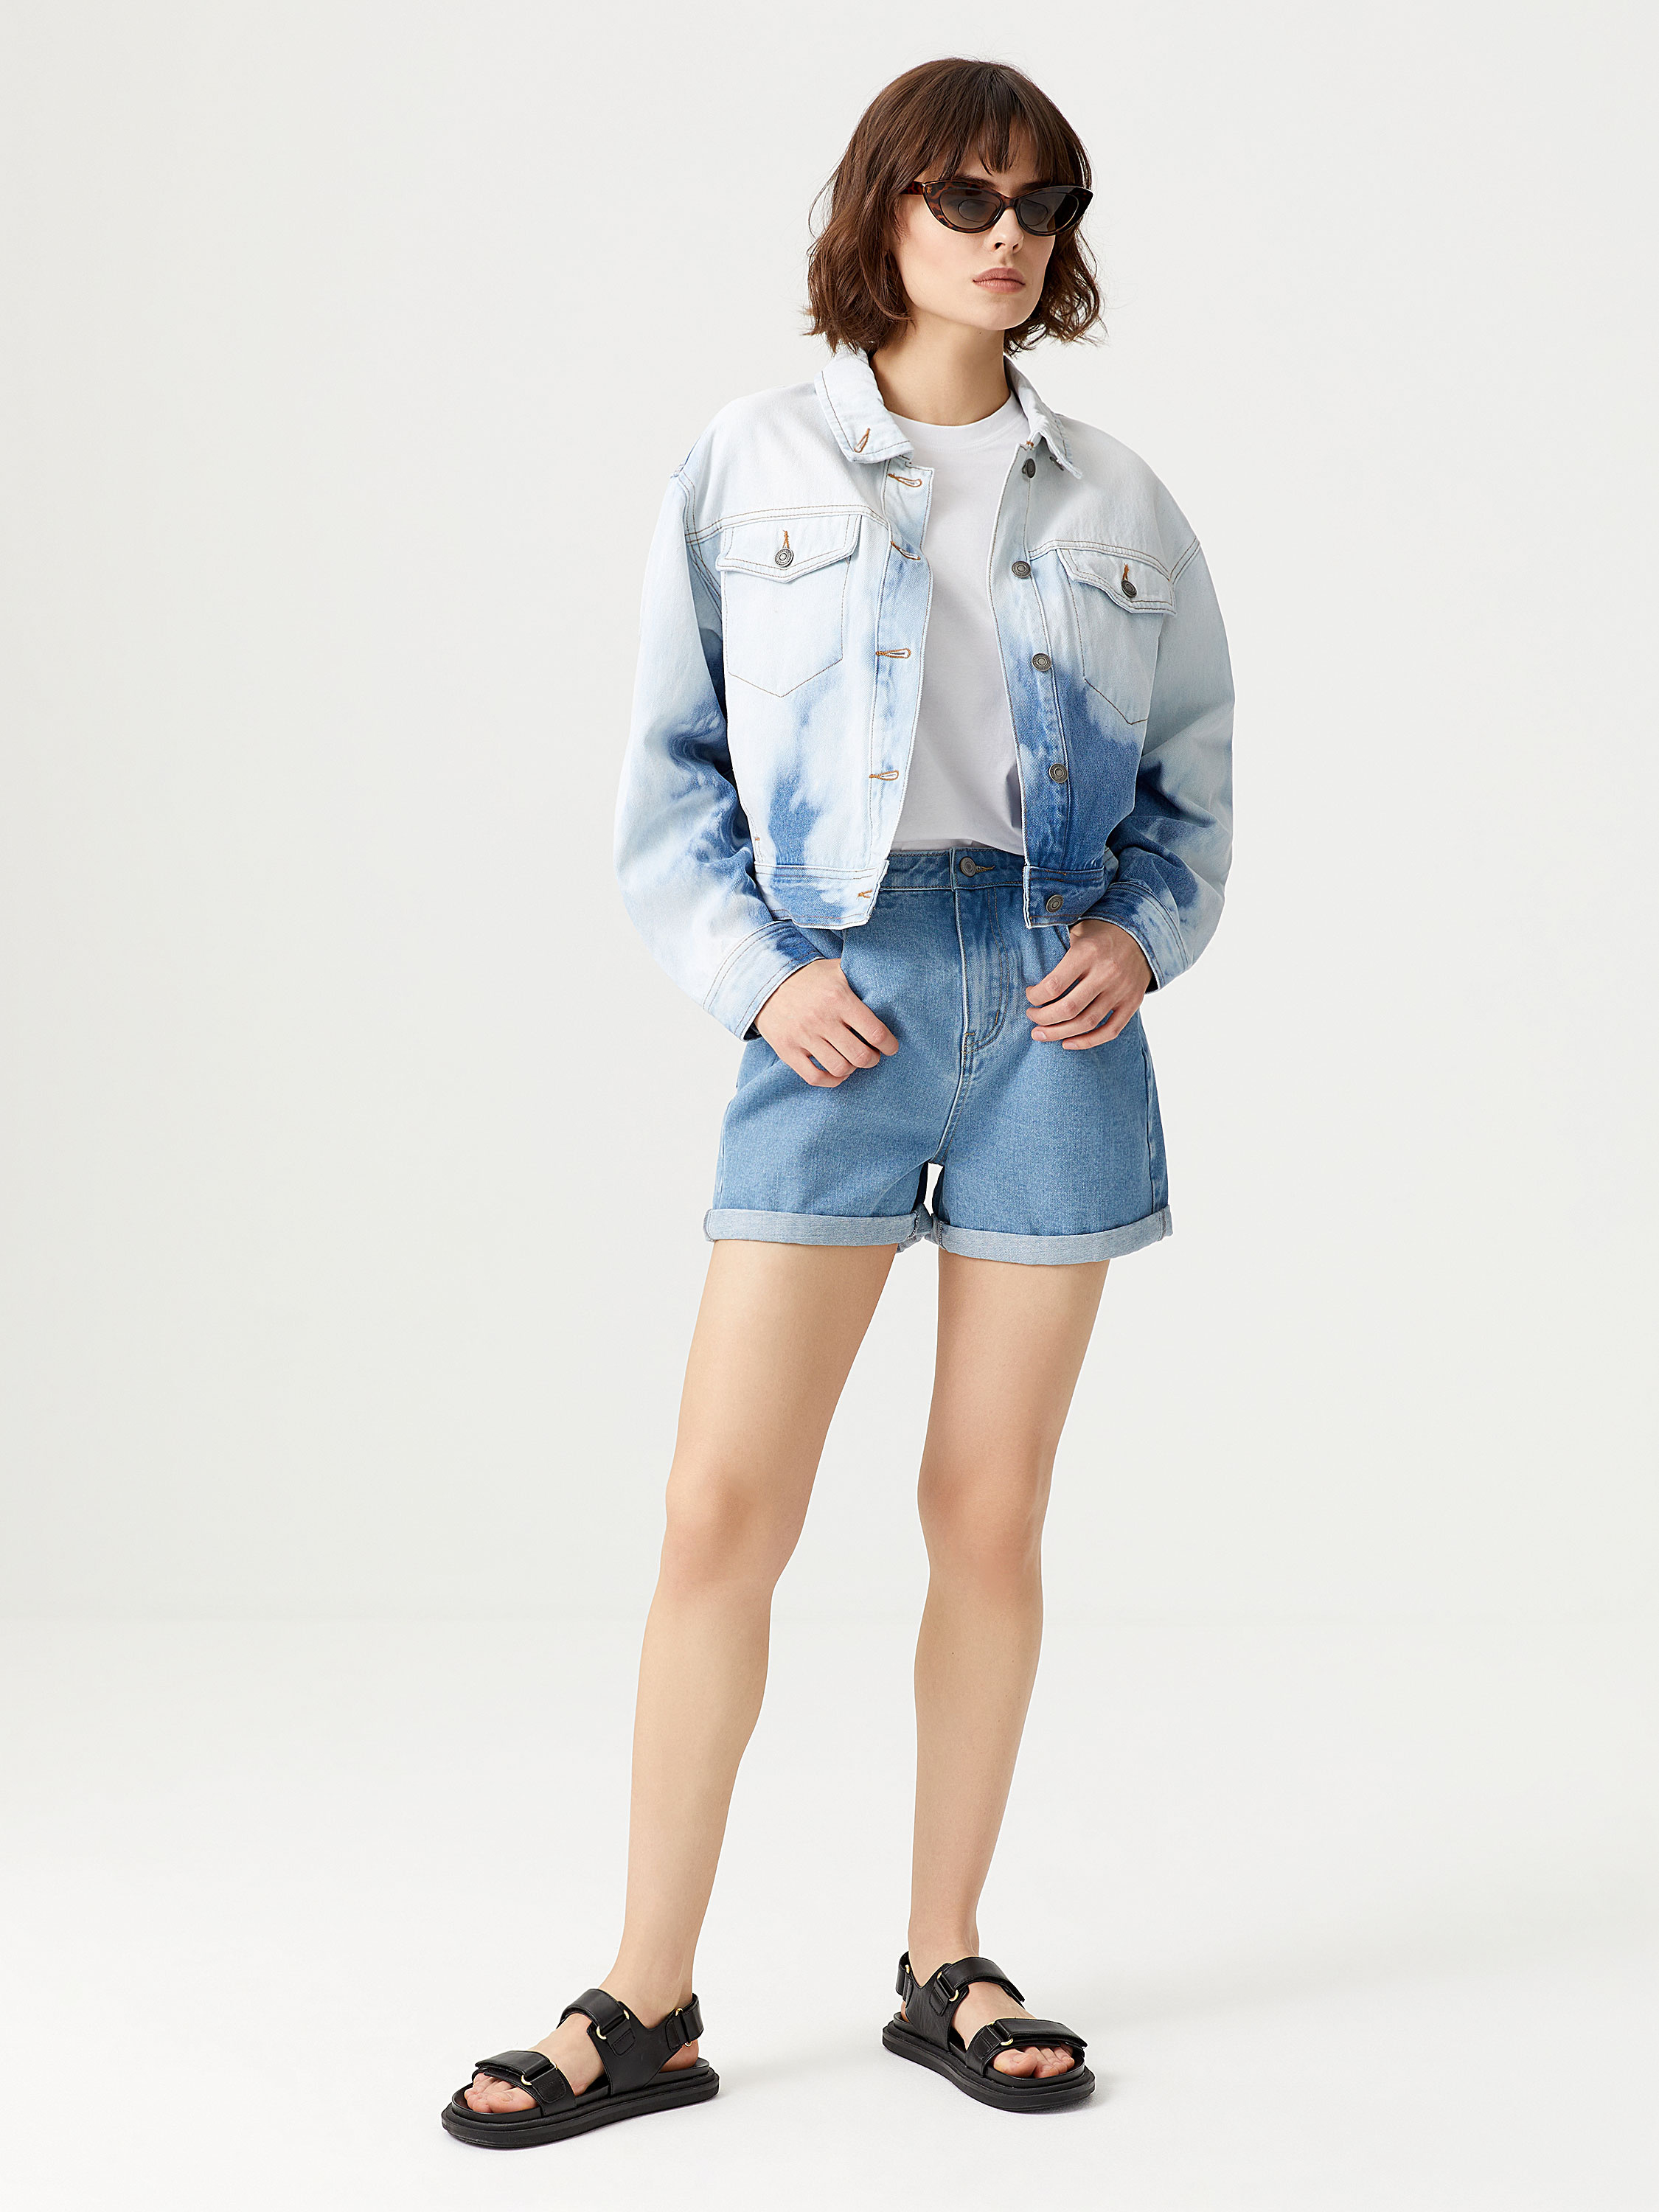 Зара Интернет Магазин Женской Одежды Джинсовые Куртки